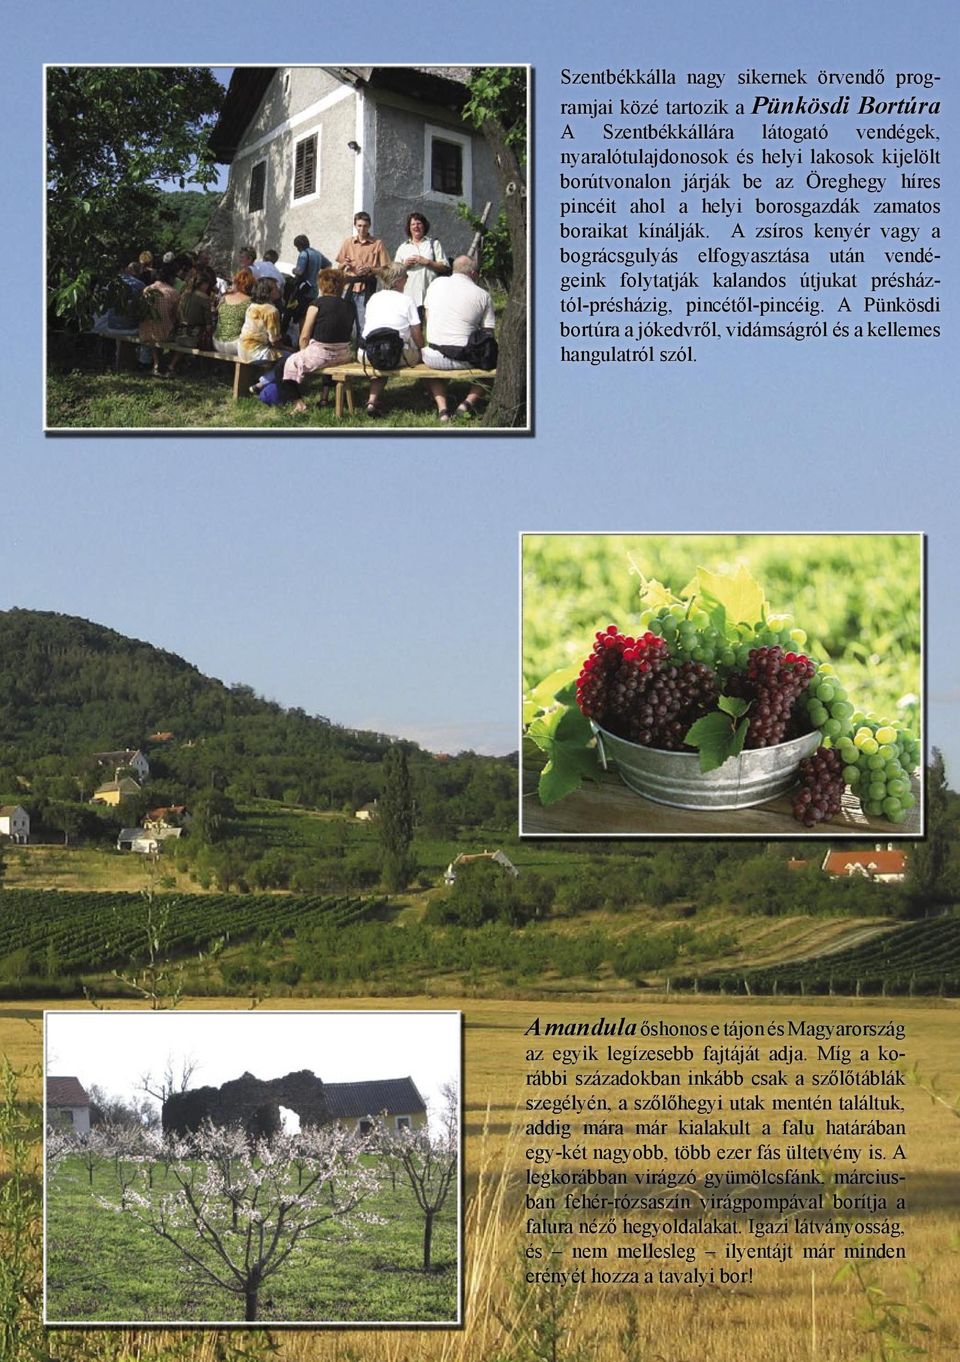 A Pünkösdi bortúra a jókedvről, vidámságról és a kellemes hangulatról szól. A mandula őshonos e tájon és Magyarország az egyik legízesebb fajtáját adja.